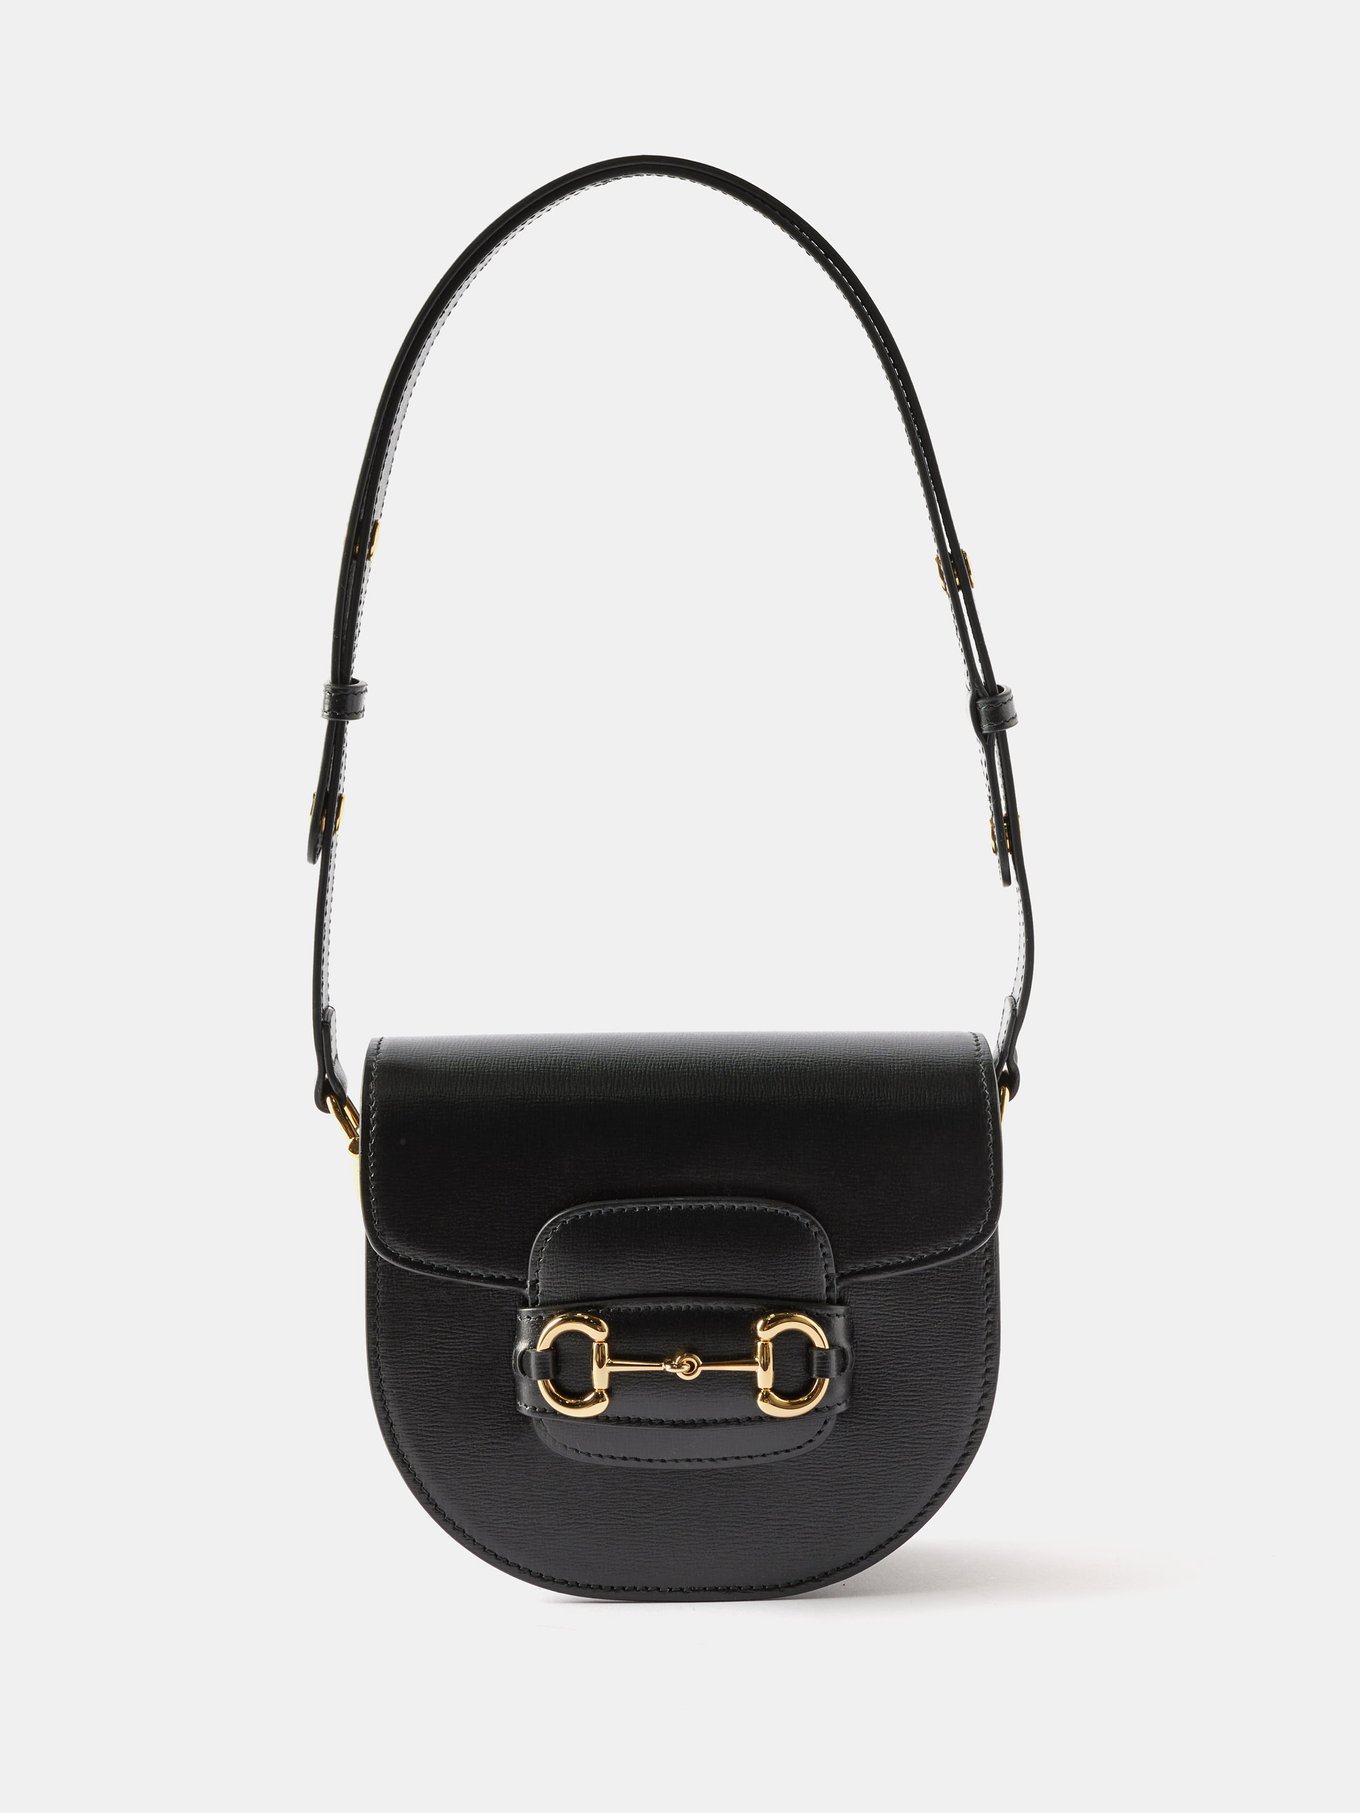 Gucci 1955 Horsebit Mini Bag - Black